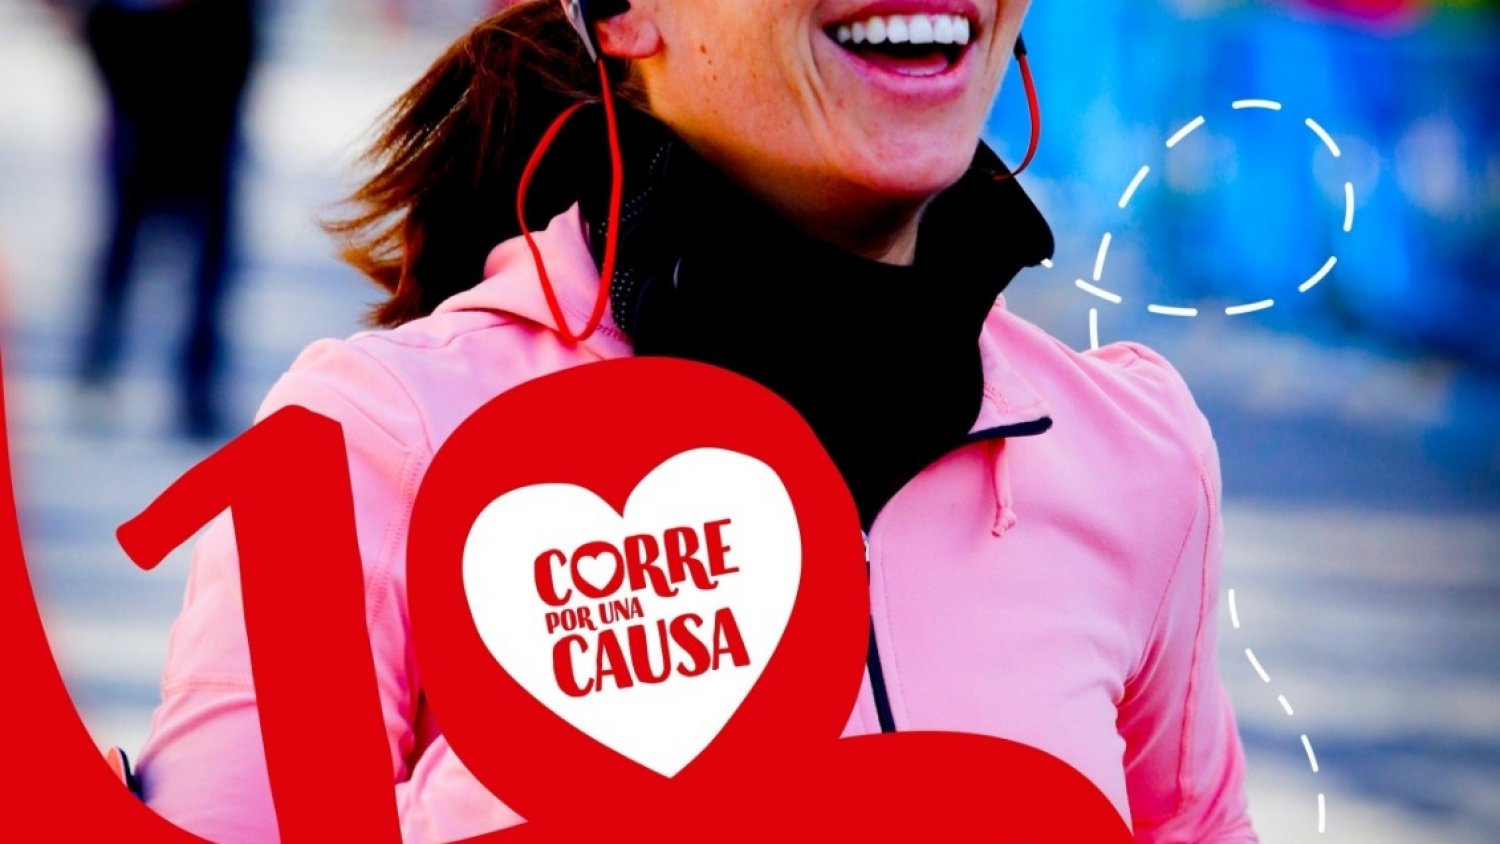 Málaga es una de las sedes de la X Carrera Solidaria “Corre por una causa” celebrada el 20 y 21 de febrero